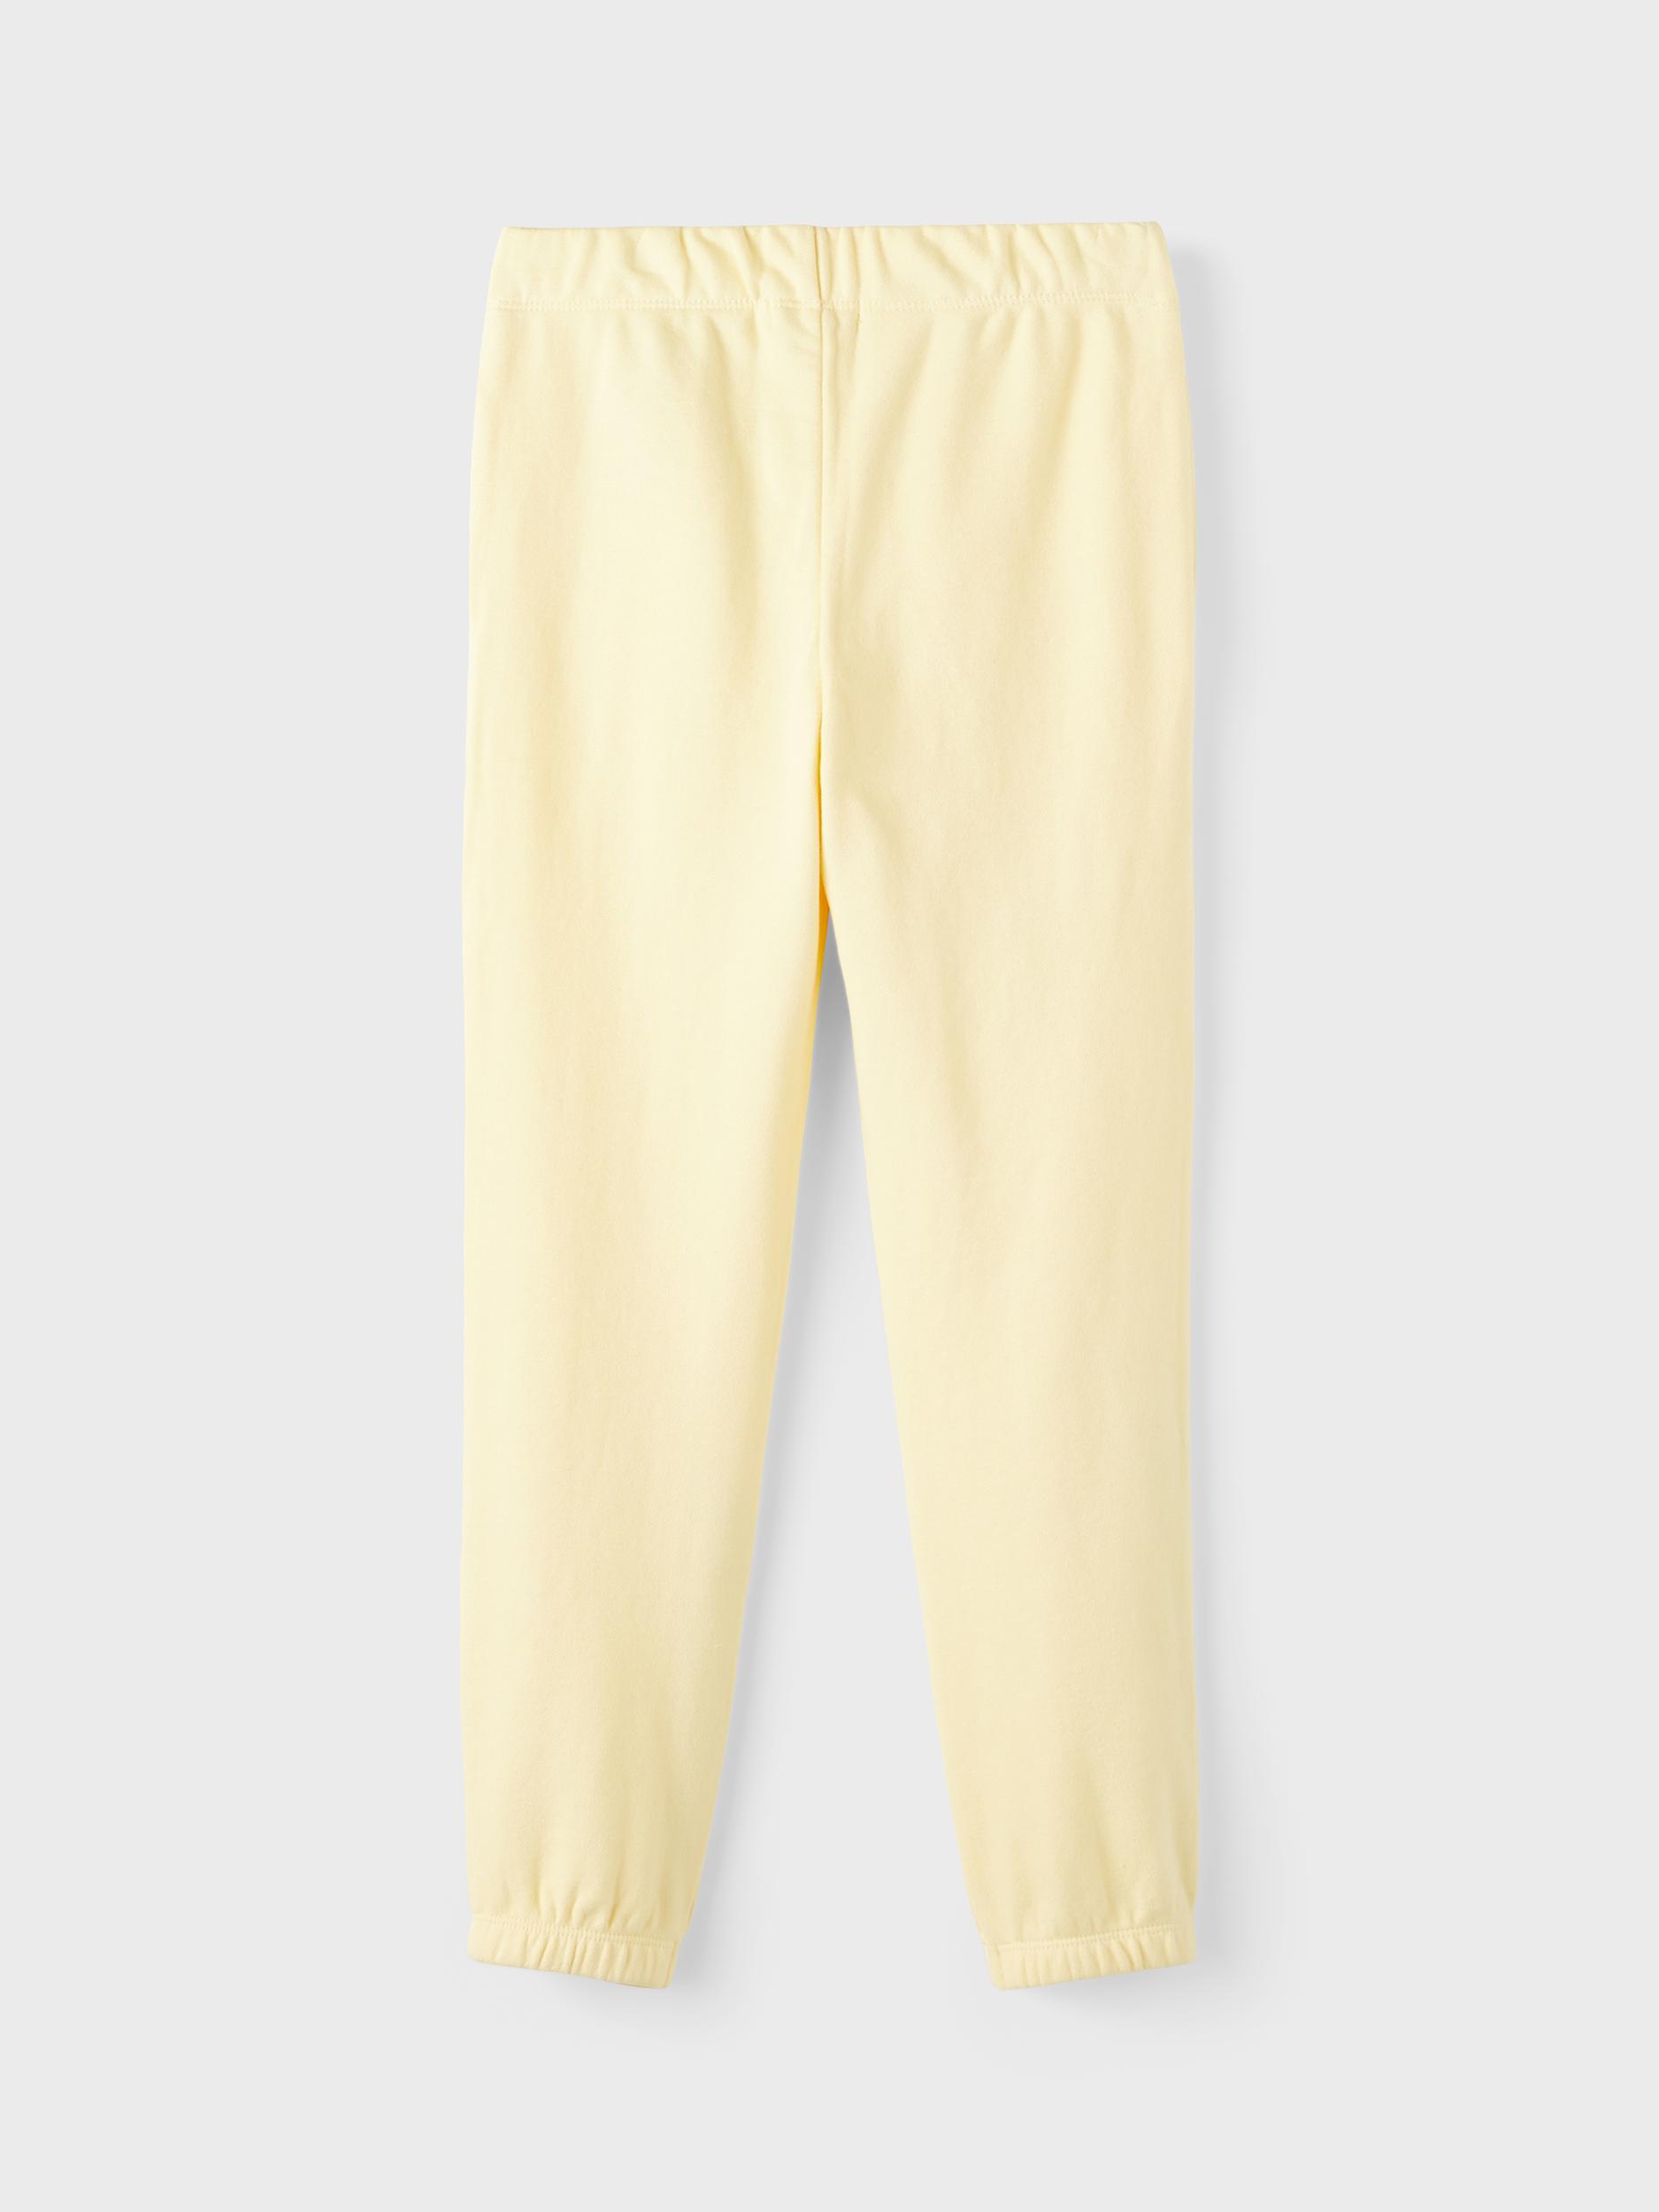  Sweatpants, Double Cream, 116 cm